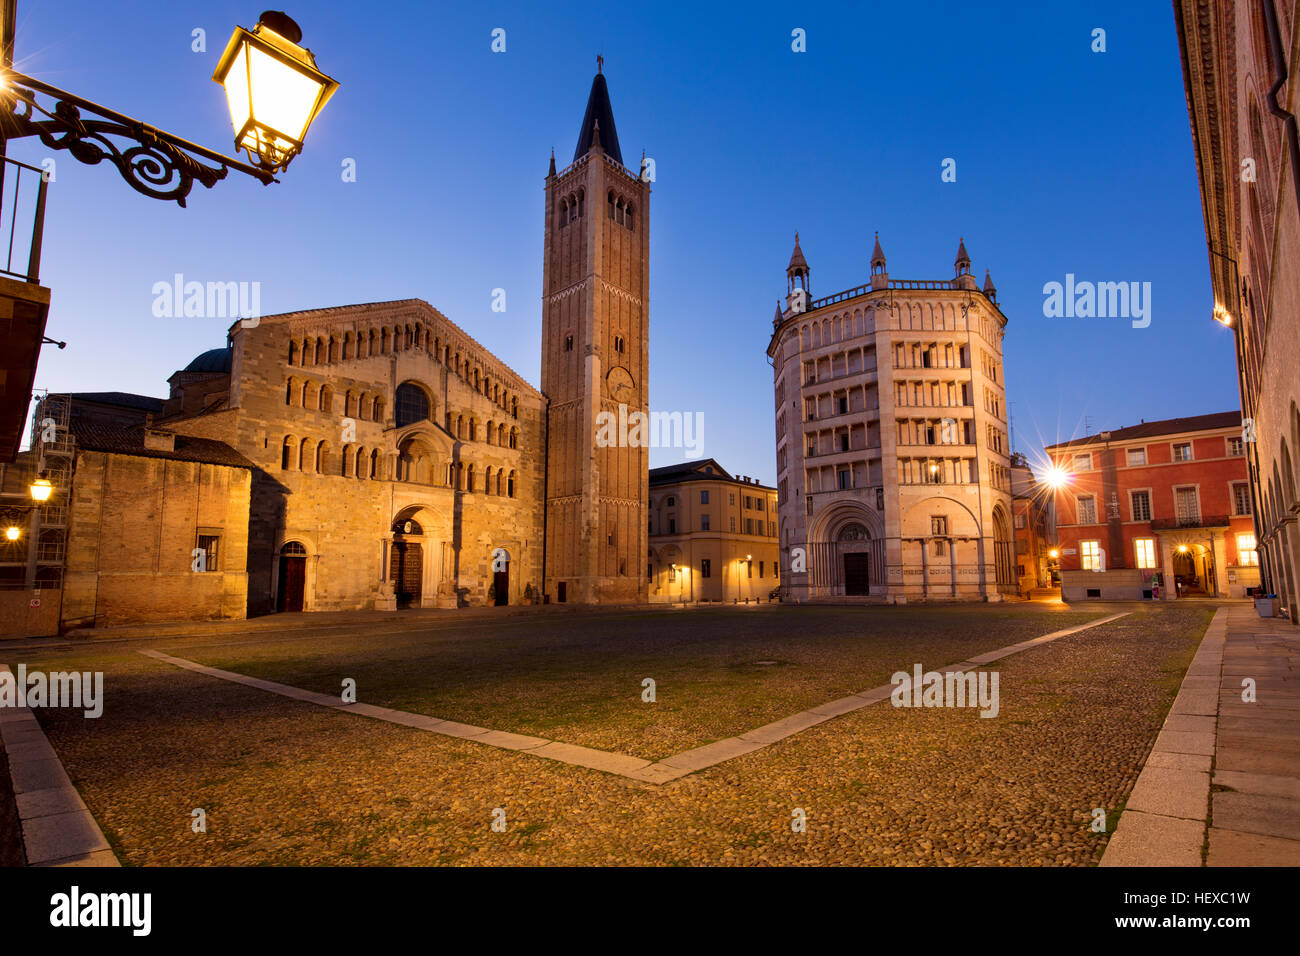 Début de l'aube sur le Duomo et le Baptistère dans la Piazza del Duomo, Parme, Emilie-Romagne, Italie Banque D'Images